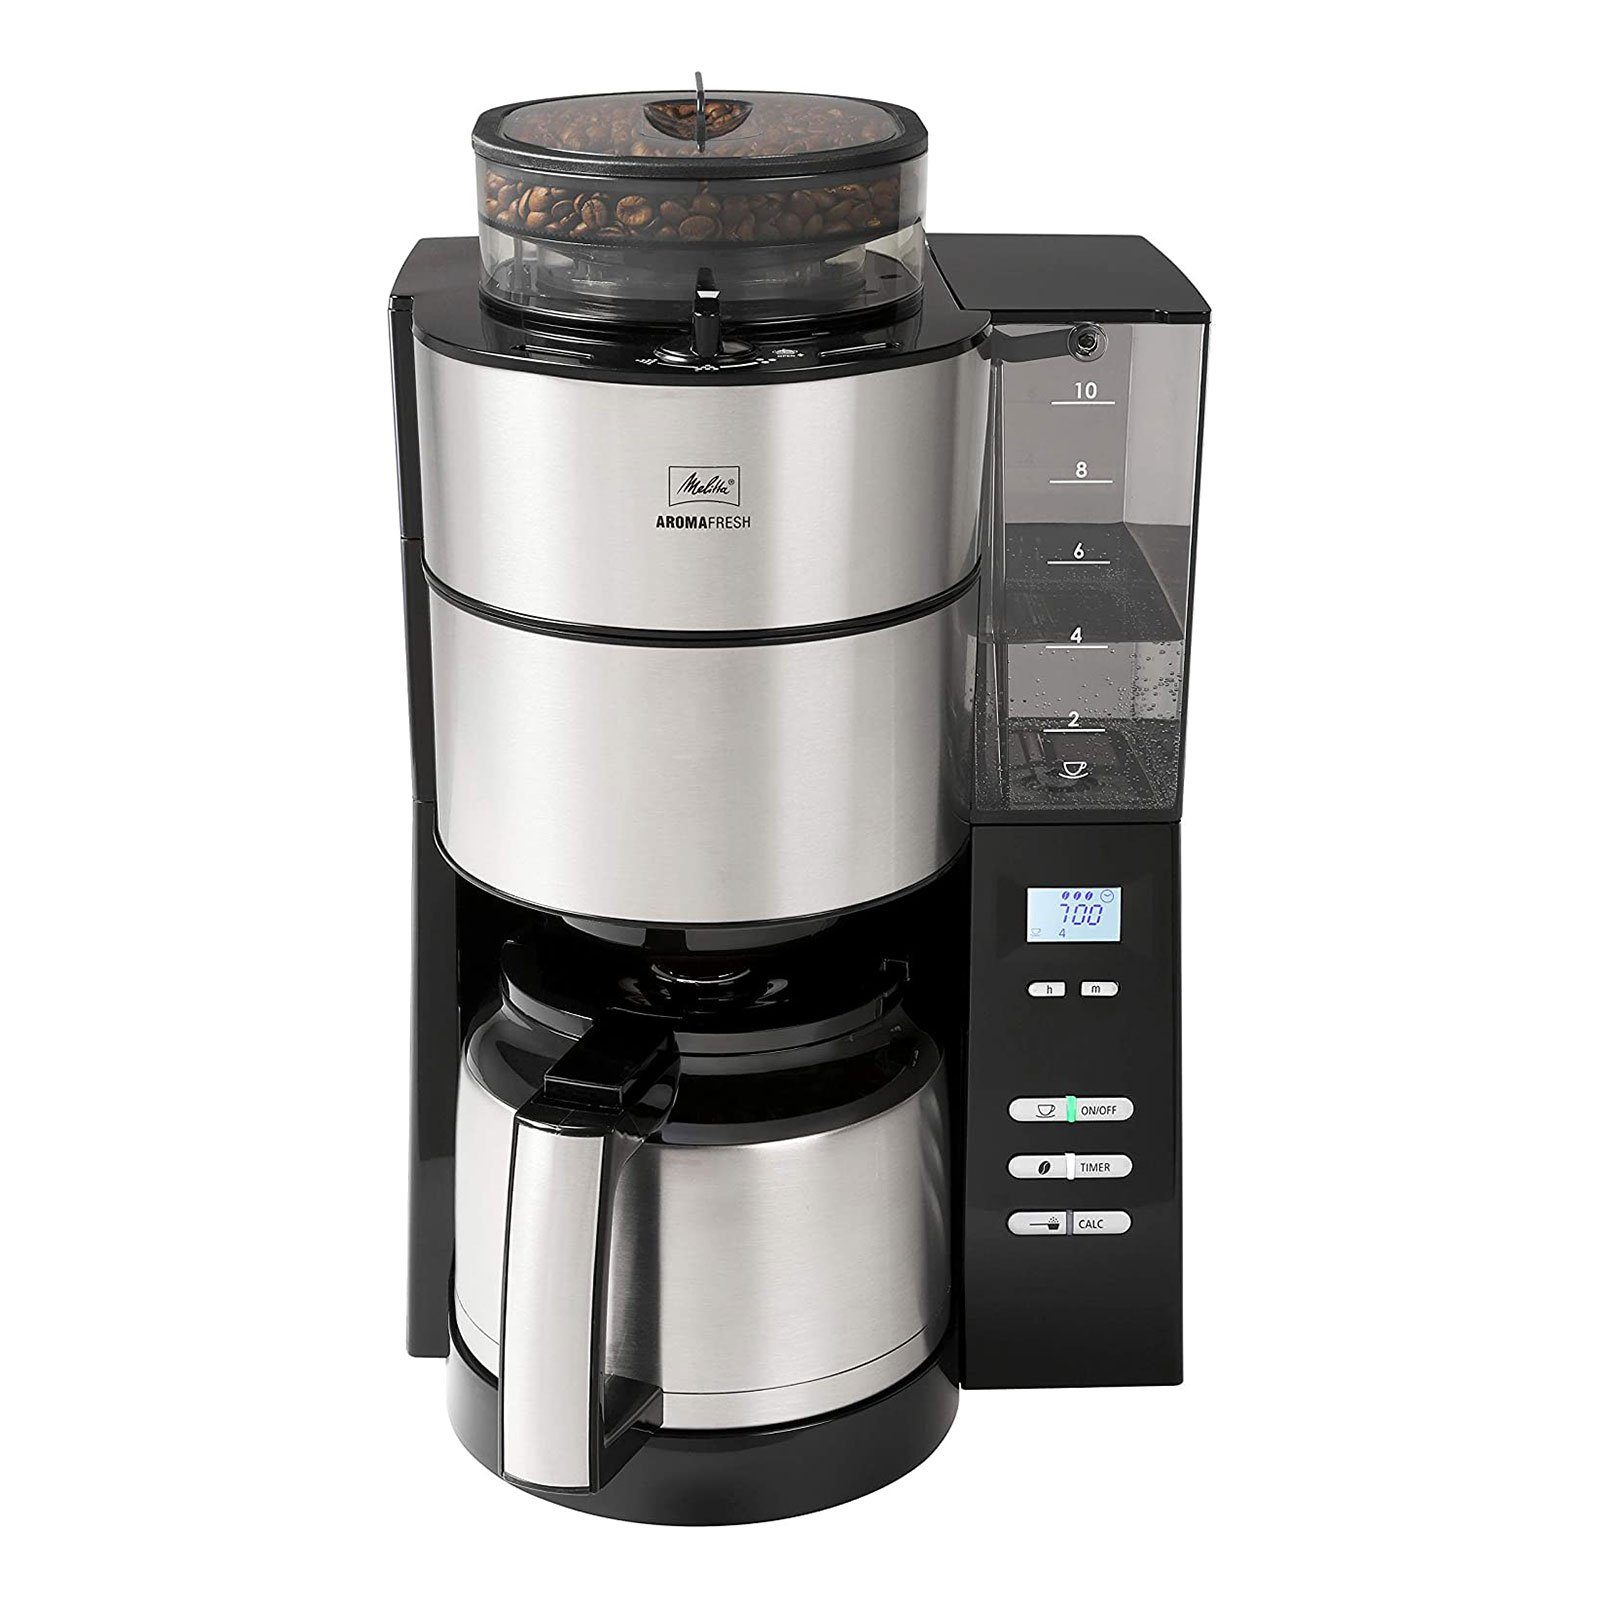 Melitta Filterkaffeemaschine 1021-12 Aroma Fresh Kaffeeautomat Thermo mit Timer und Mahlwerk | Filterkaffeemaschinen